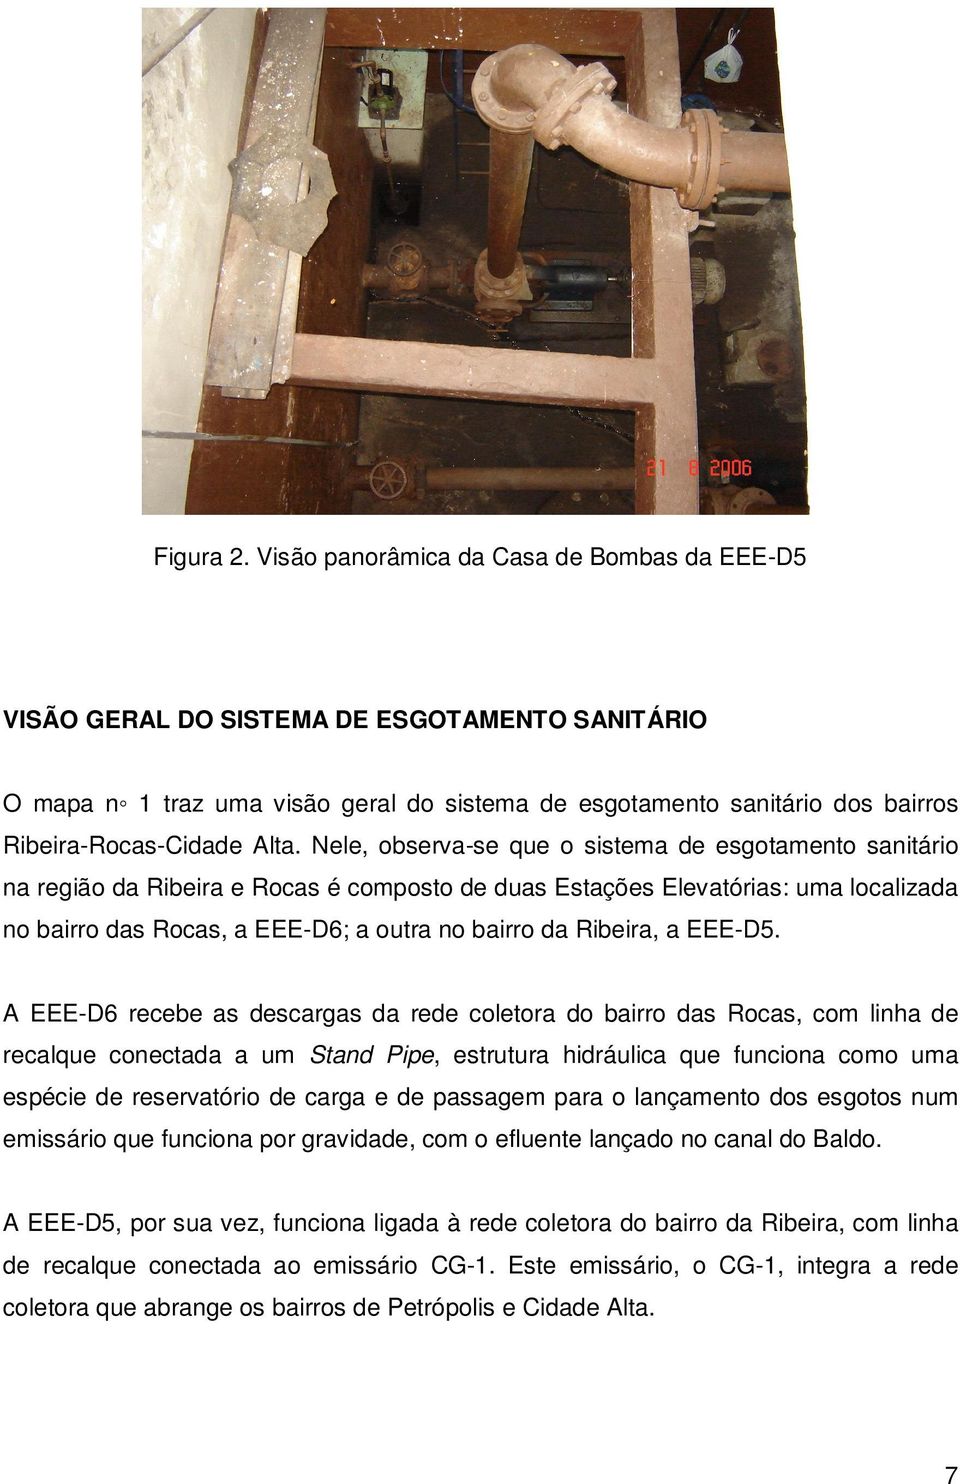 Nele, observa-se que o sistema de esgotamento sanitário na região da Ribeira e Rocas é composto de duas Estações Elevatórias: uma localizada no bairro das Rocas, a EEE-D6; a outra no bairro da